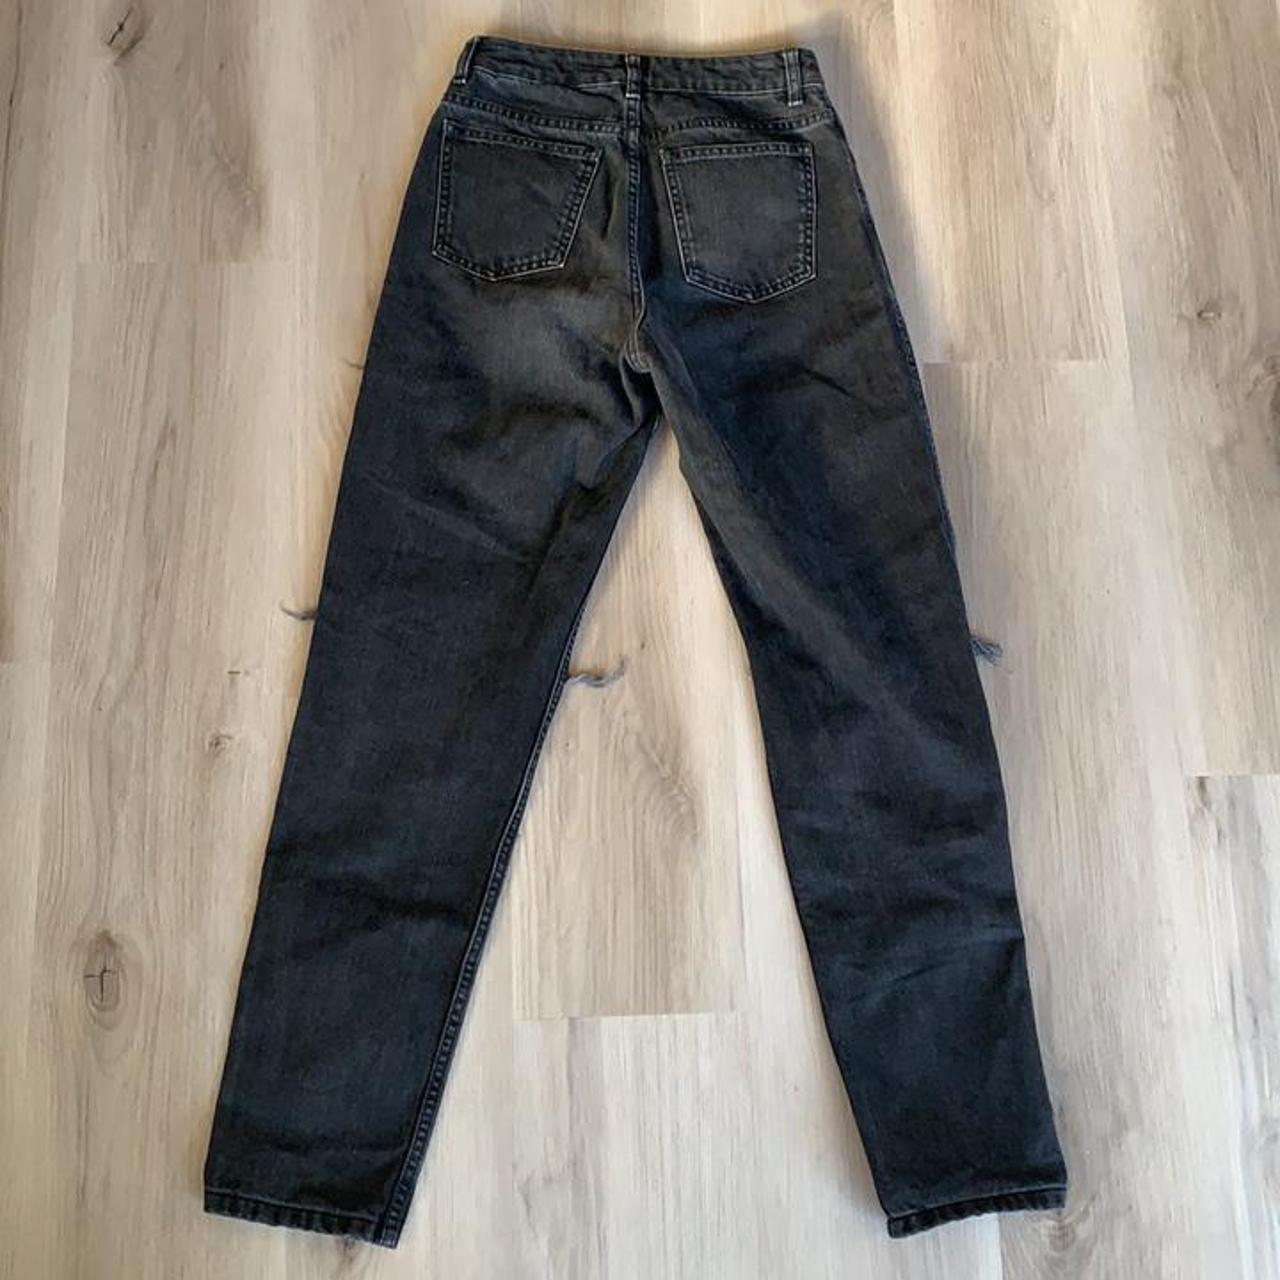 Destroyed black denim jeans - Depop